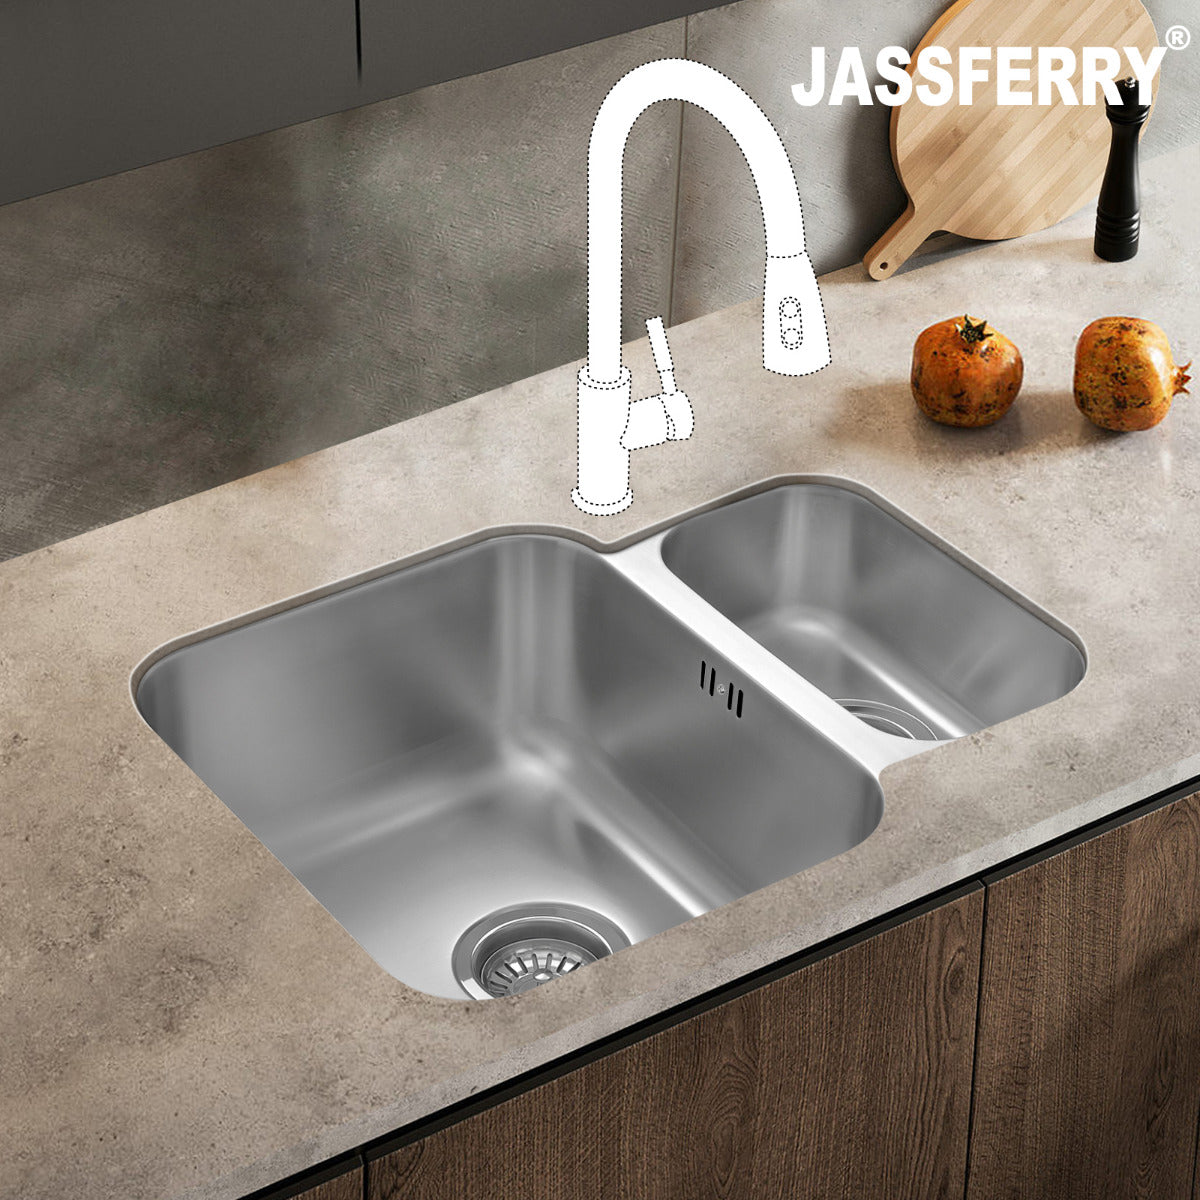 JassferryJASSFERRY Undermount Stainless Steel Kitchen Sink 1.5 Bowl Righthand Half - 984Kitchen Sinks